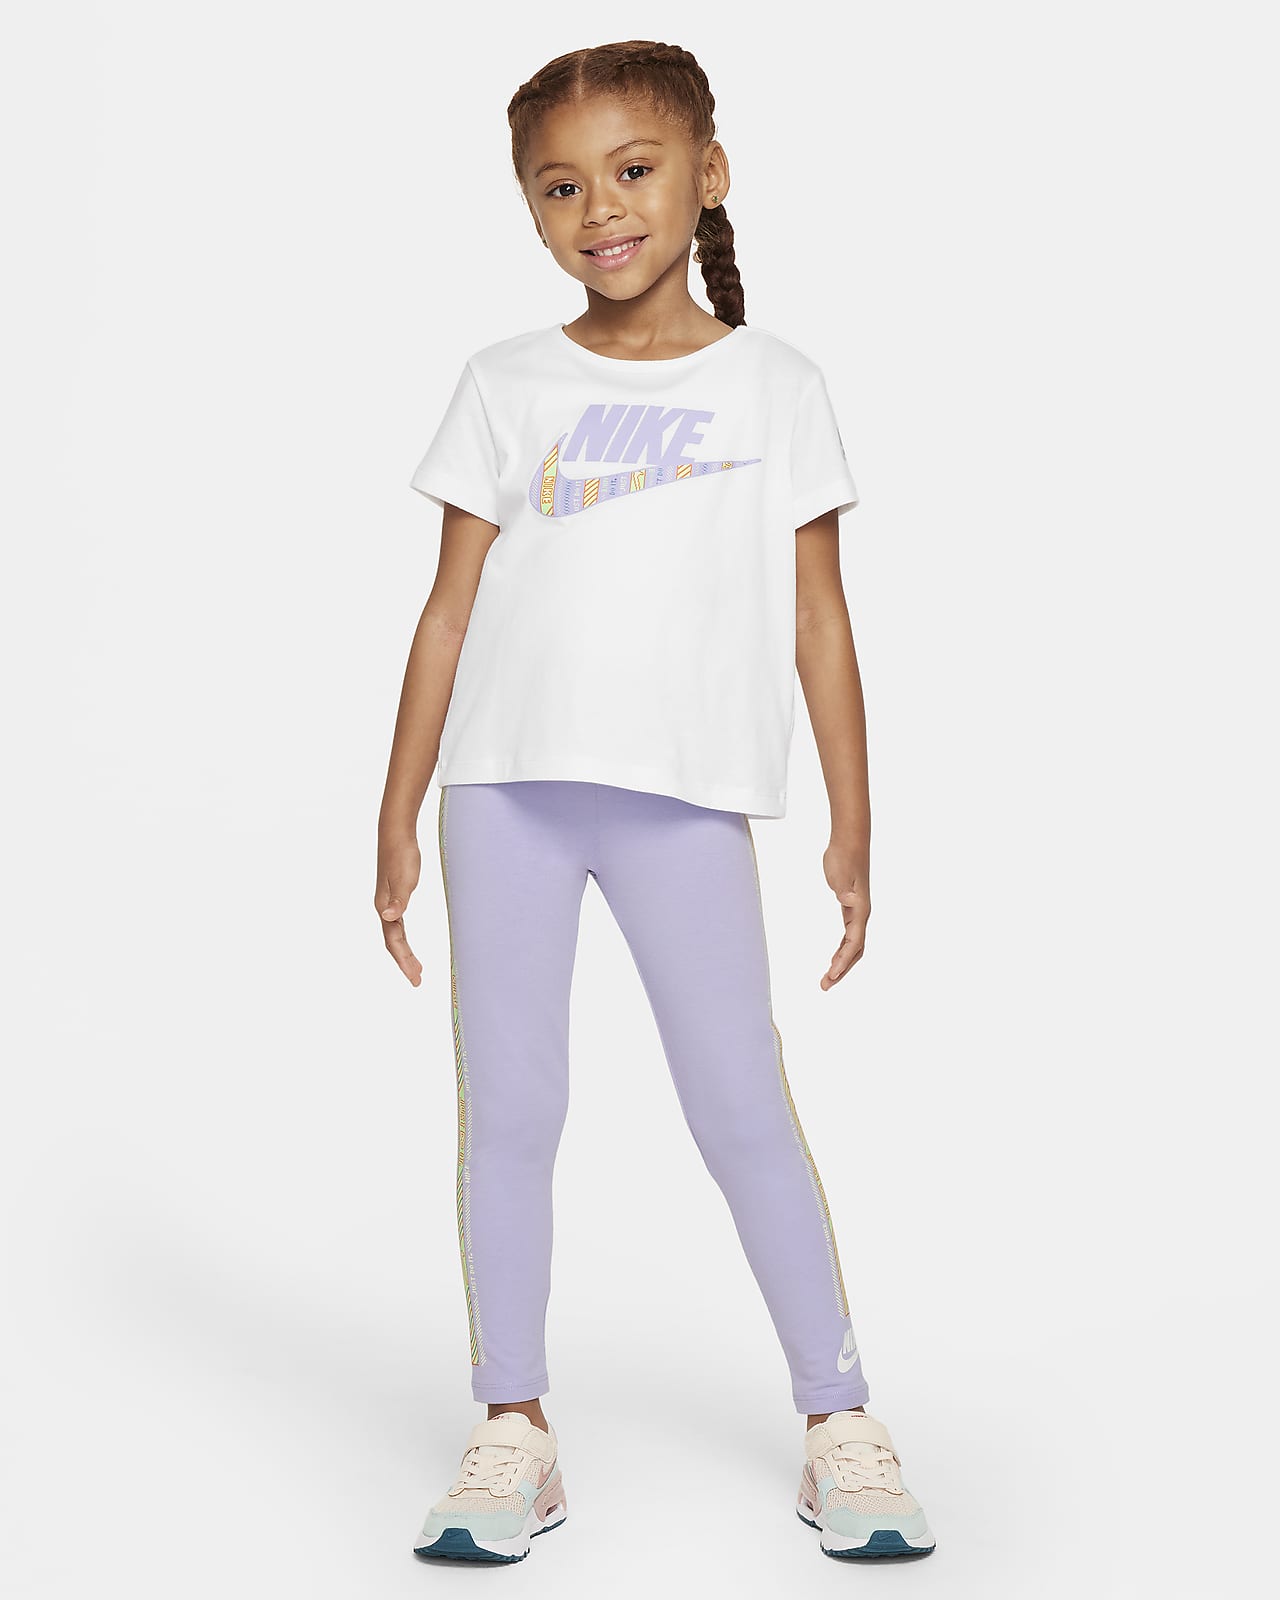 Nike Happy Camper Leggings Set für jüngere Kinder